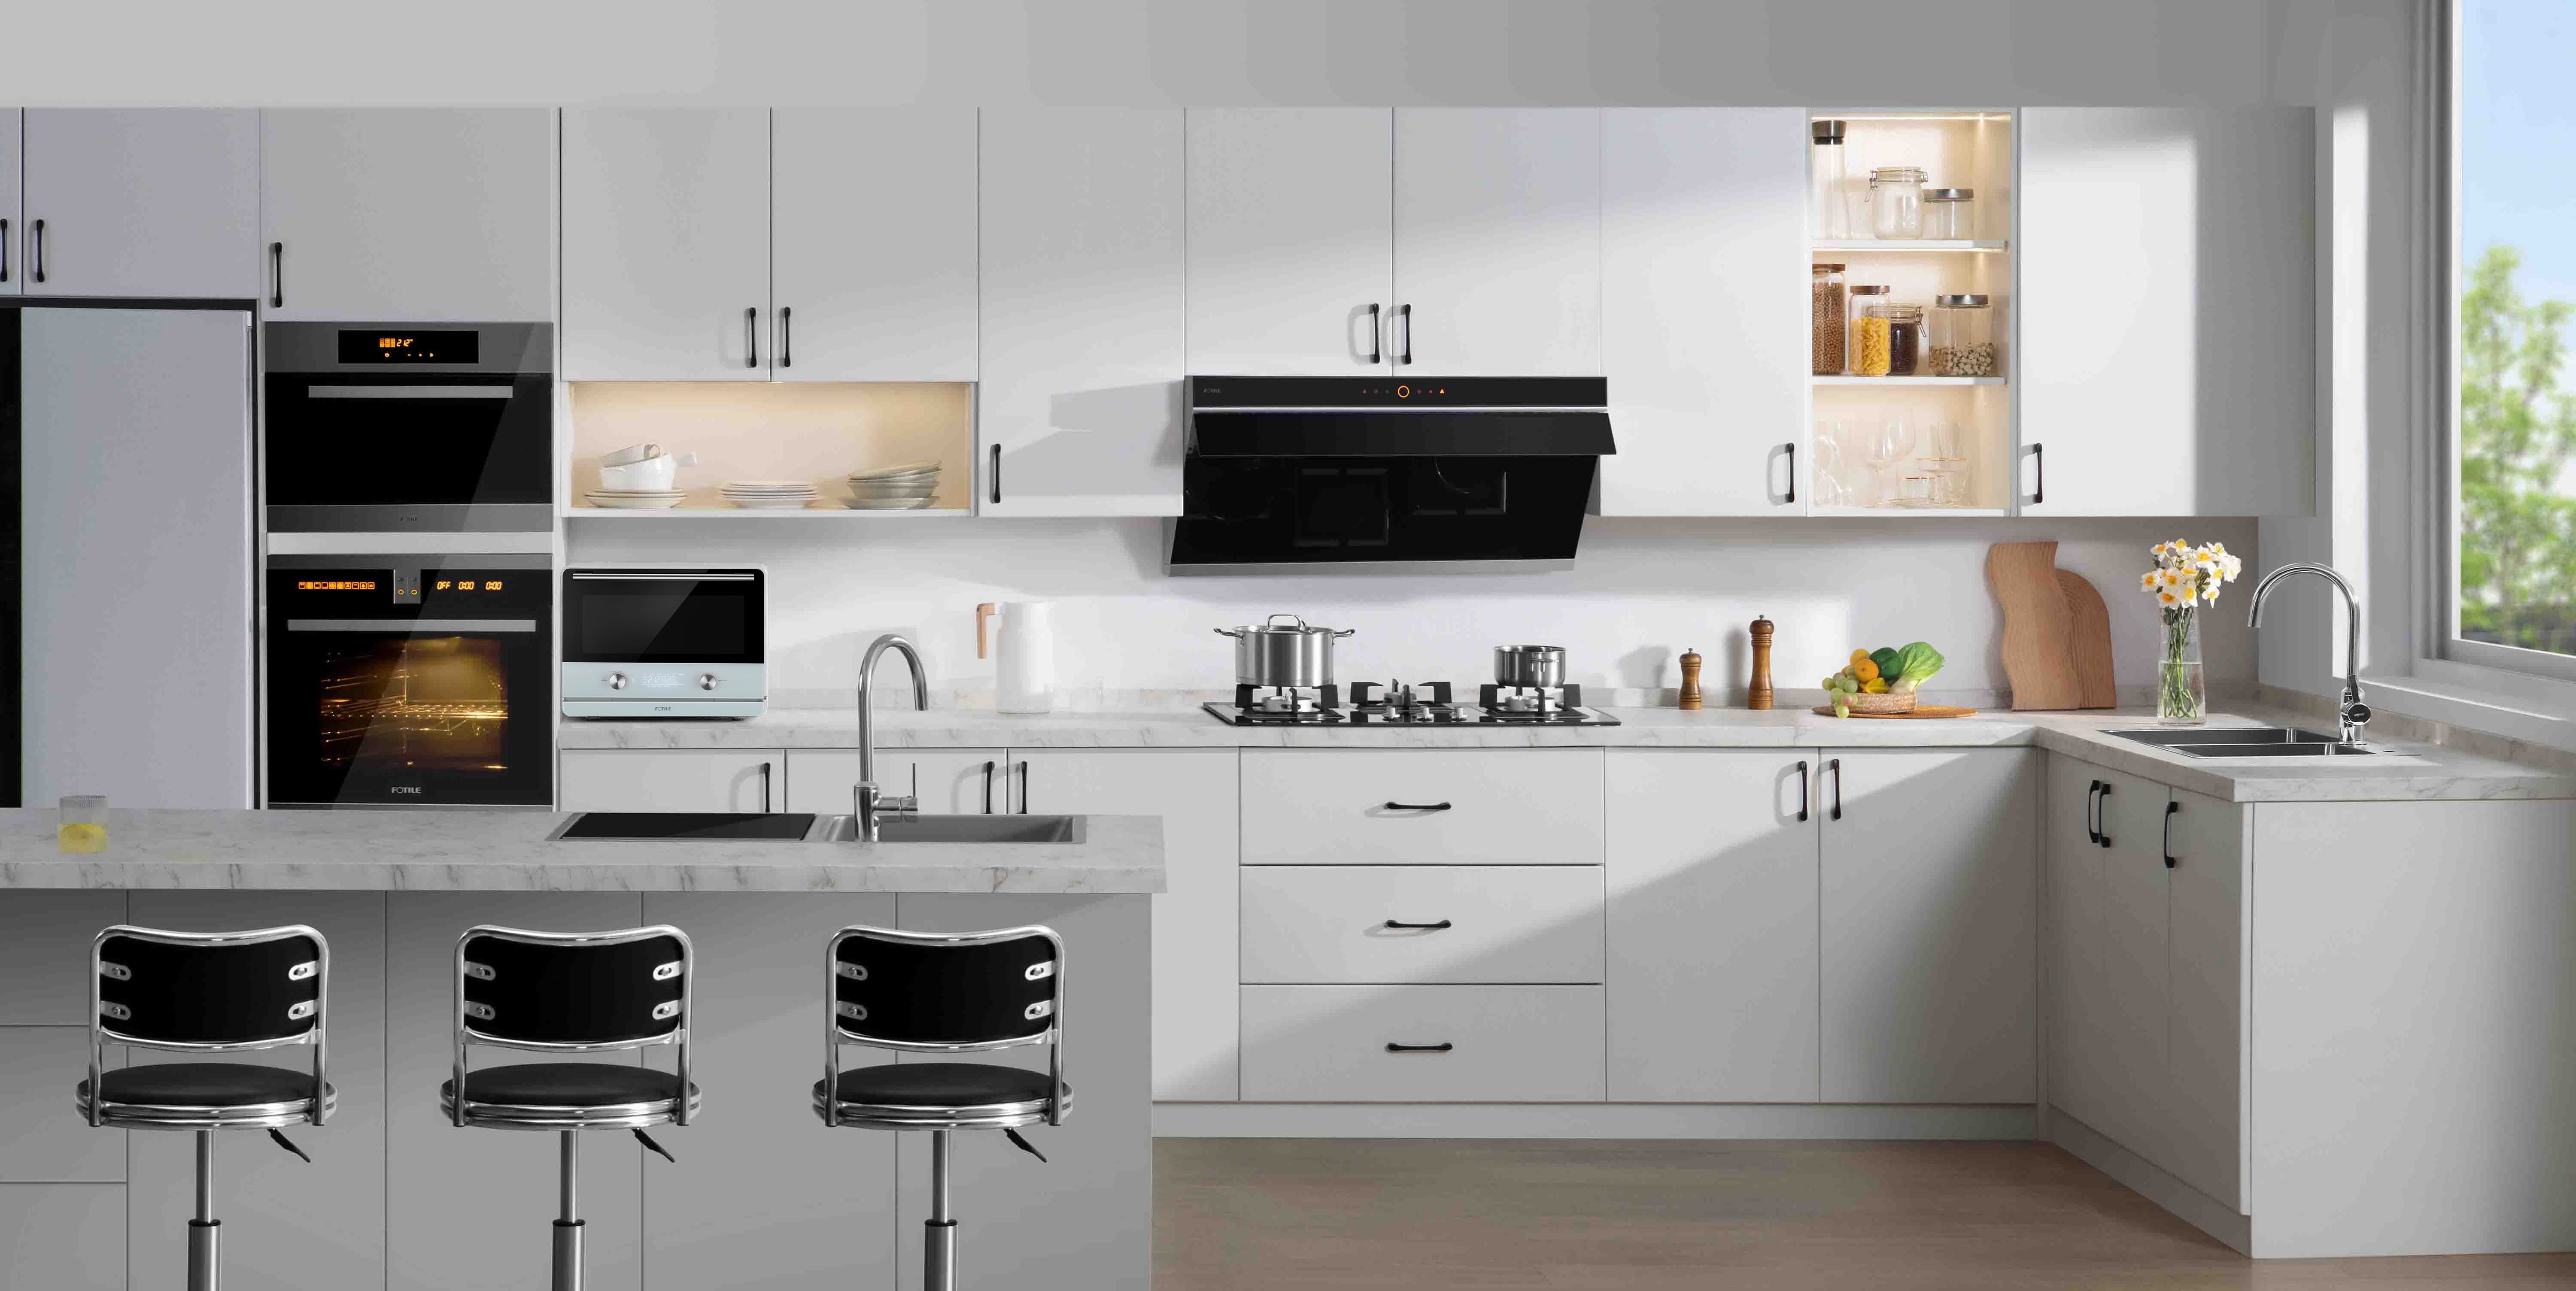 Black under-cabinet range hood in a white kitchen